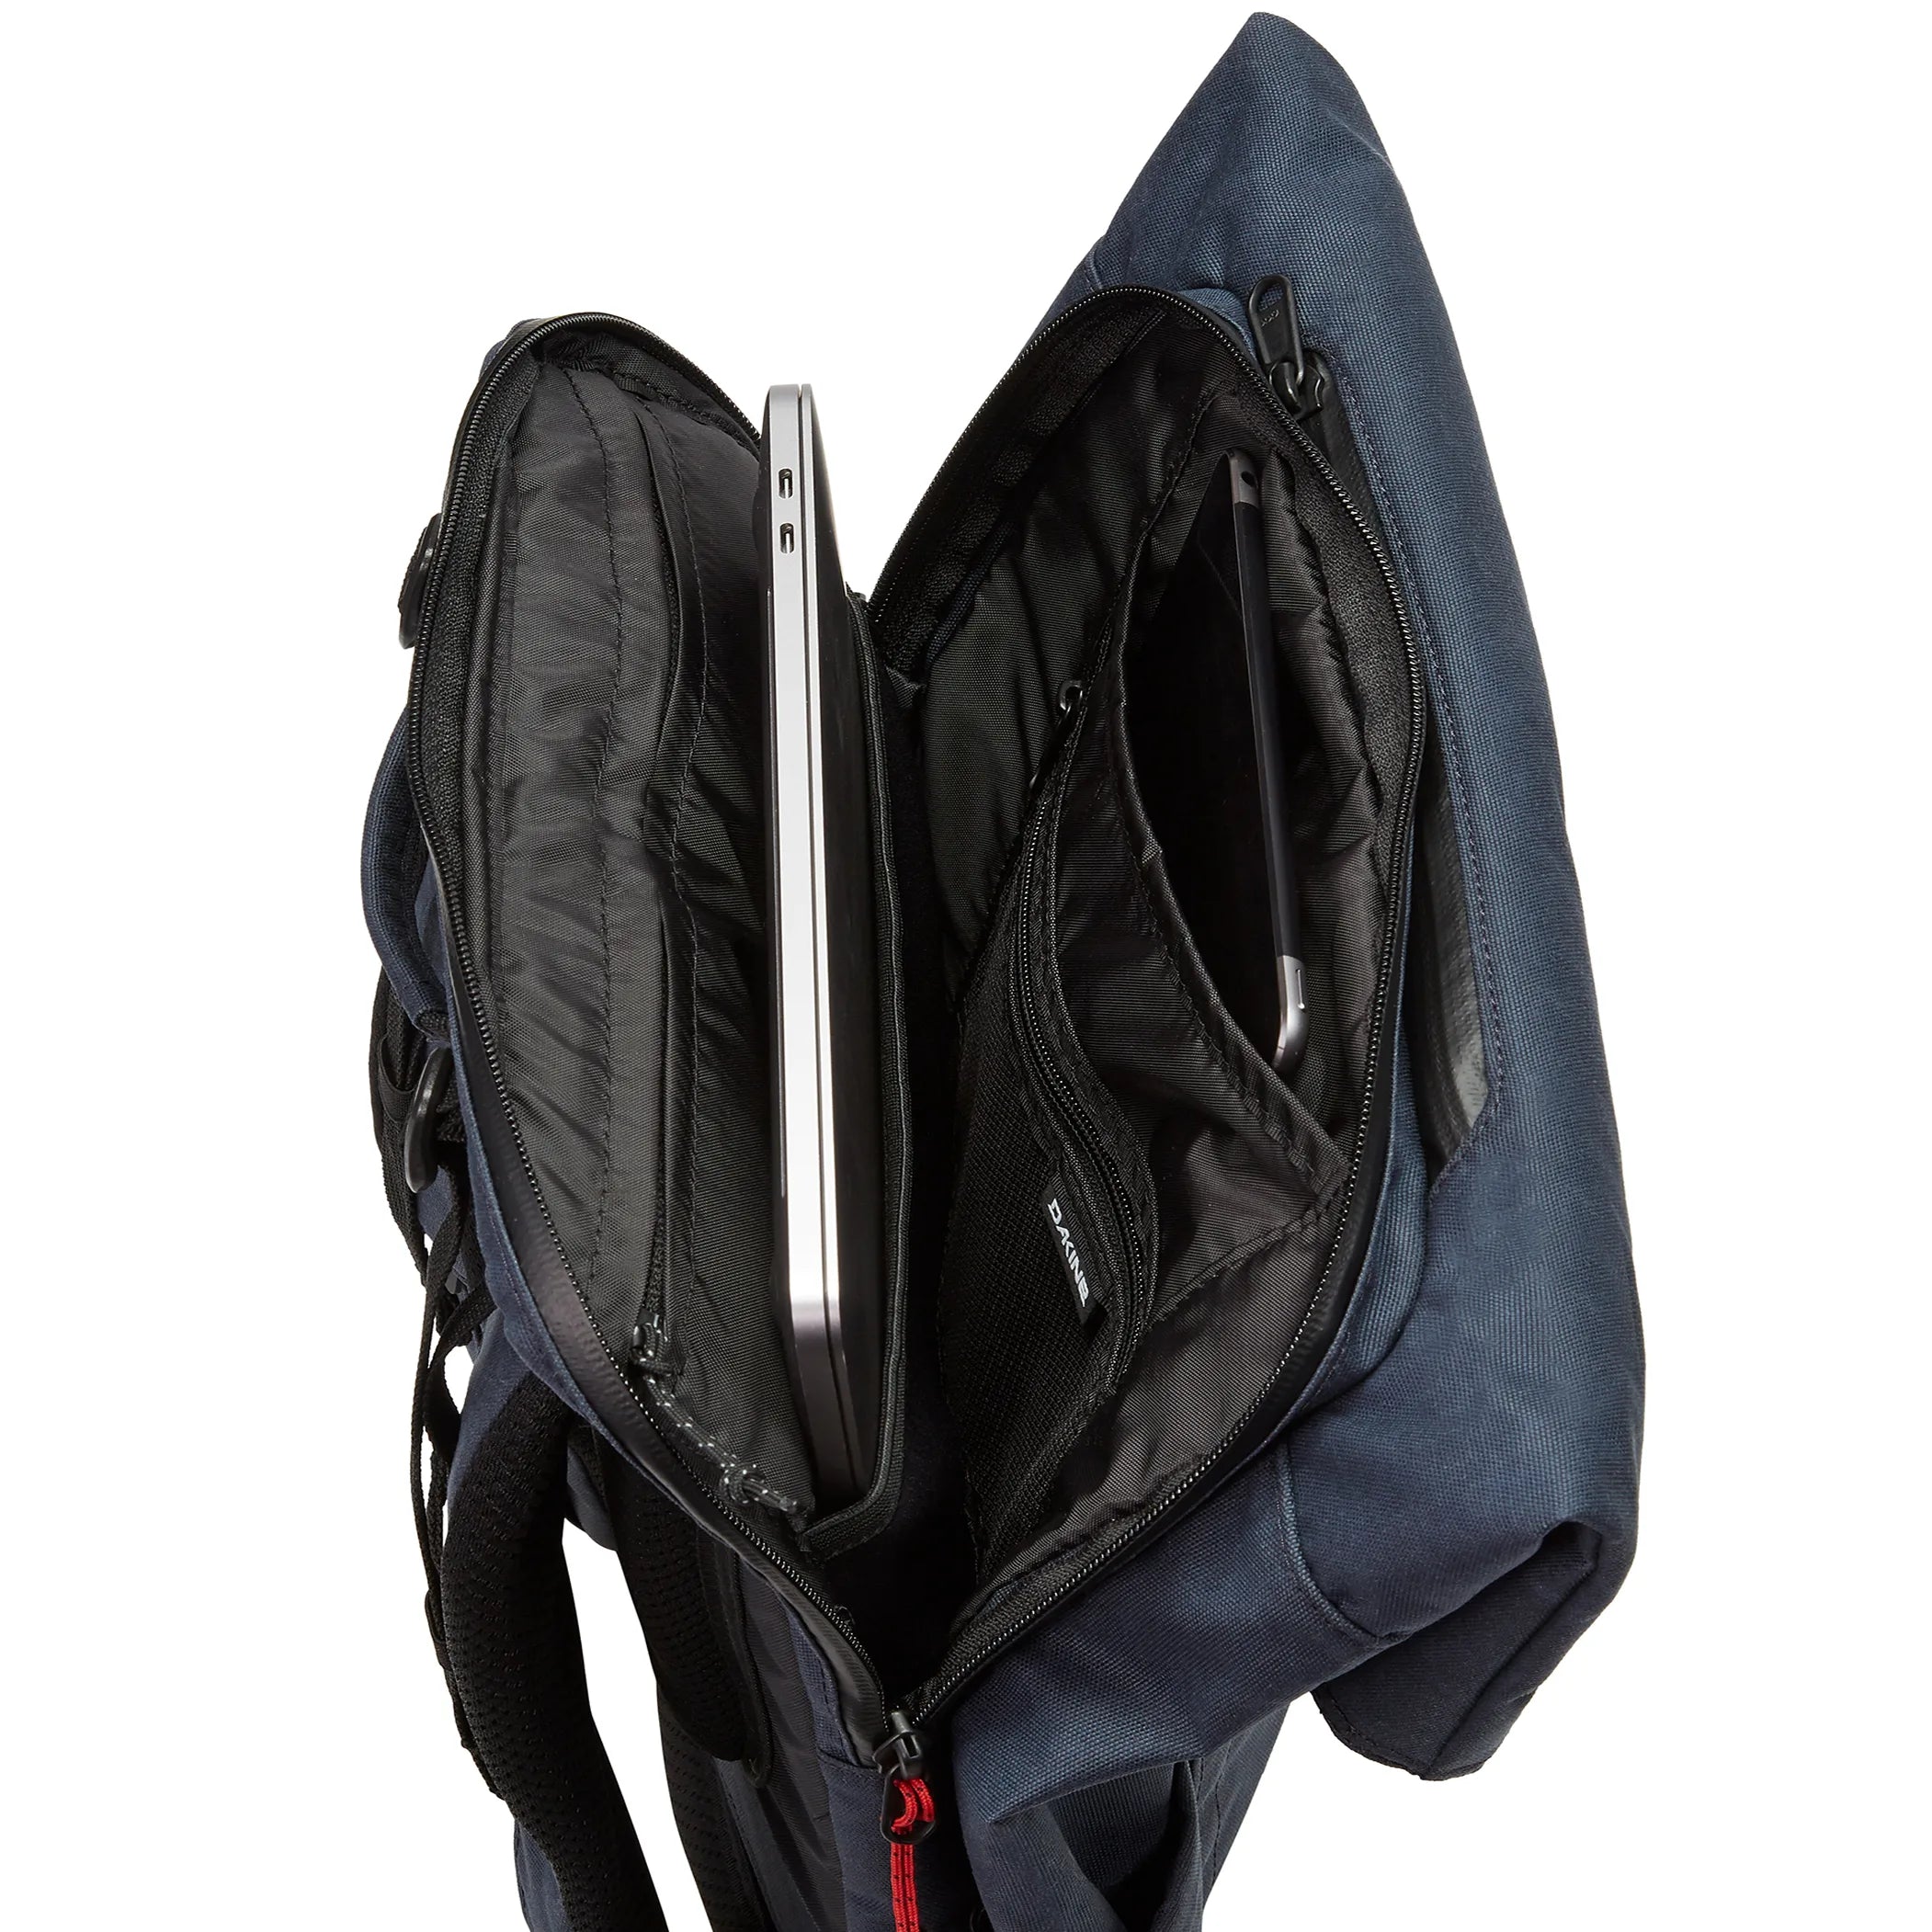 Dakine Packs & Bags Infinity Pack 21L Backpack 46 cm - dark ivy